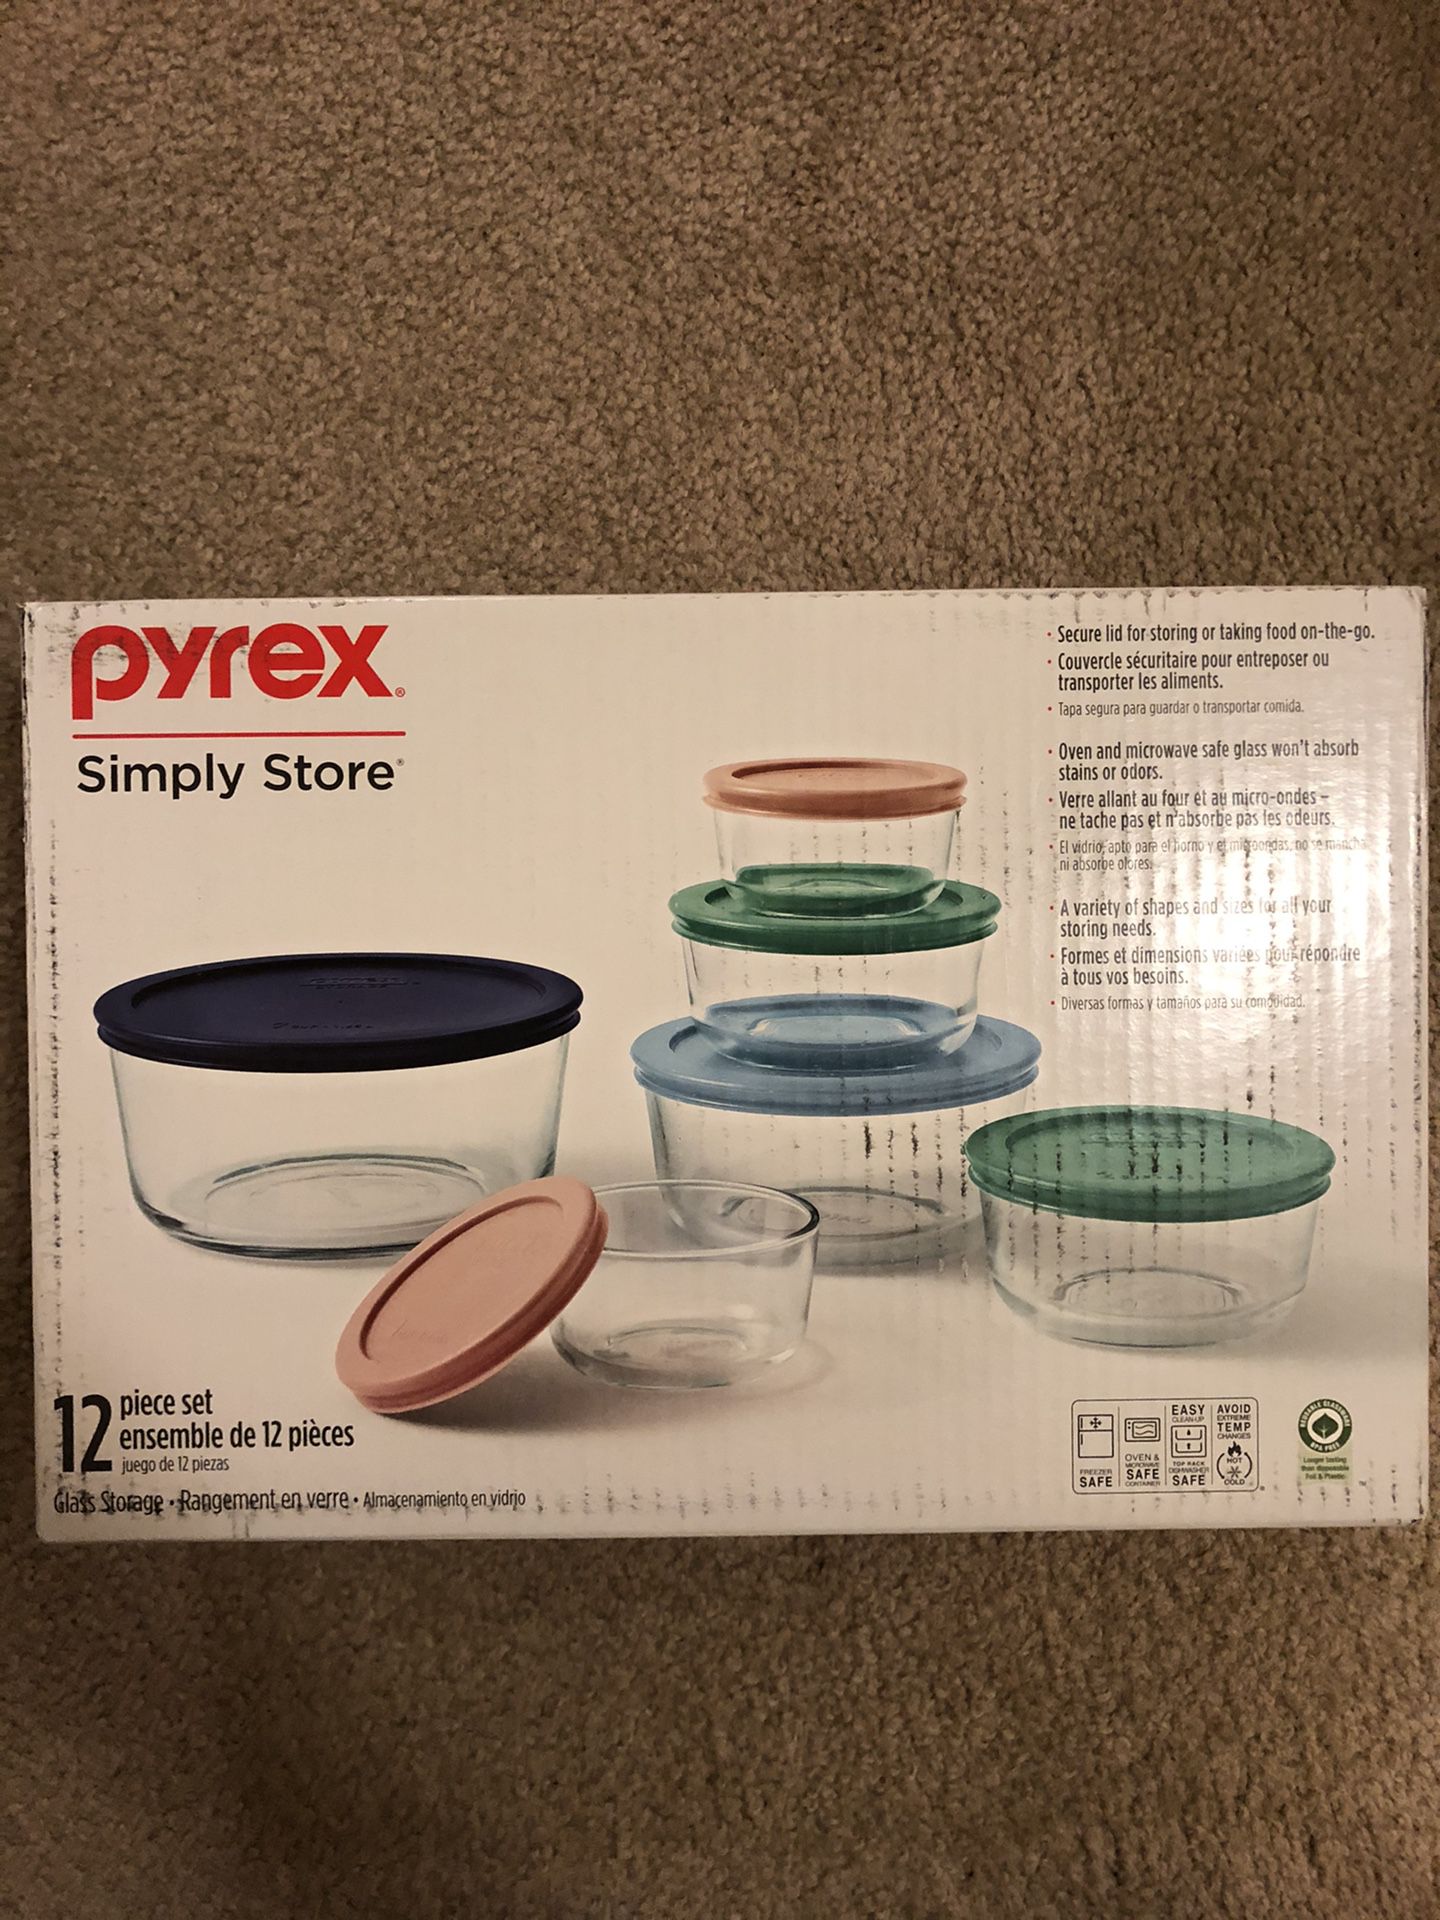 Pyrex 12 piece set